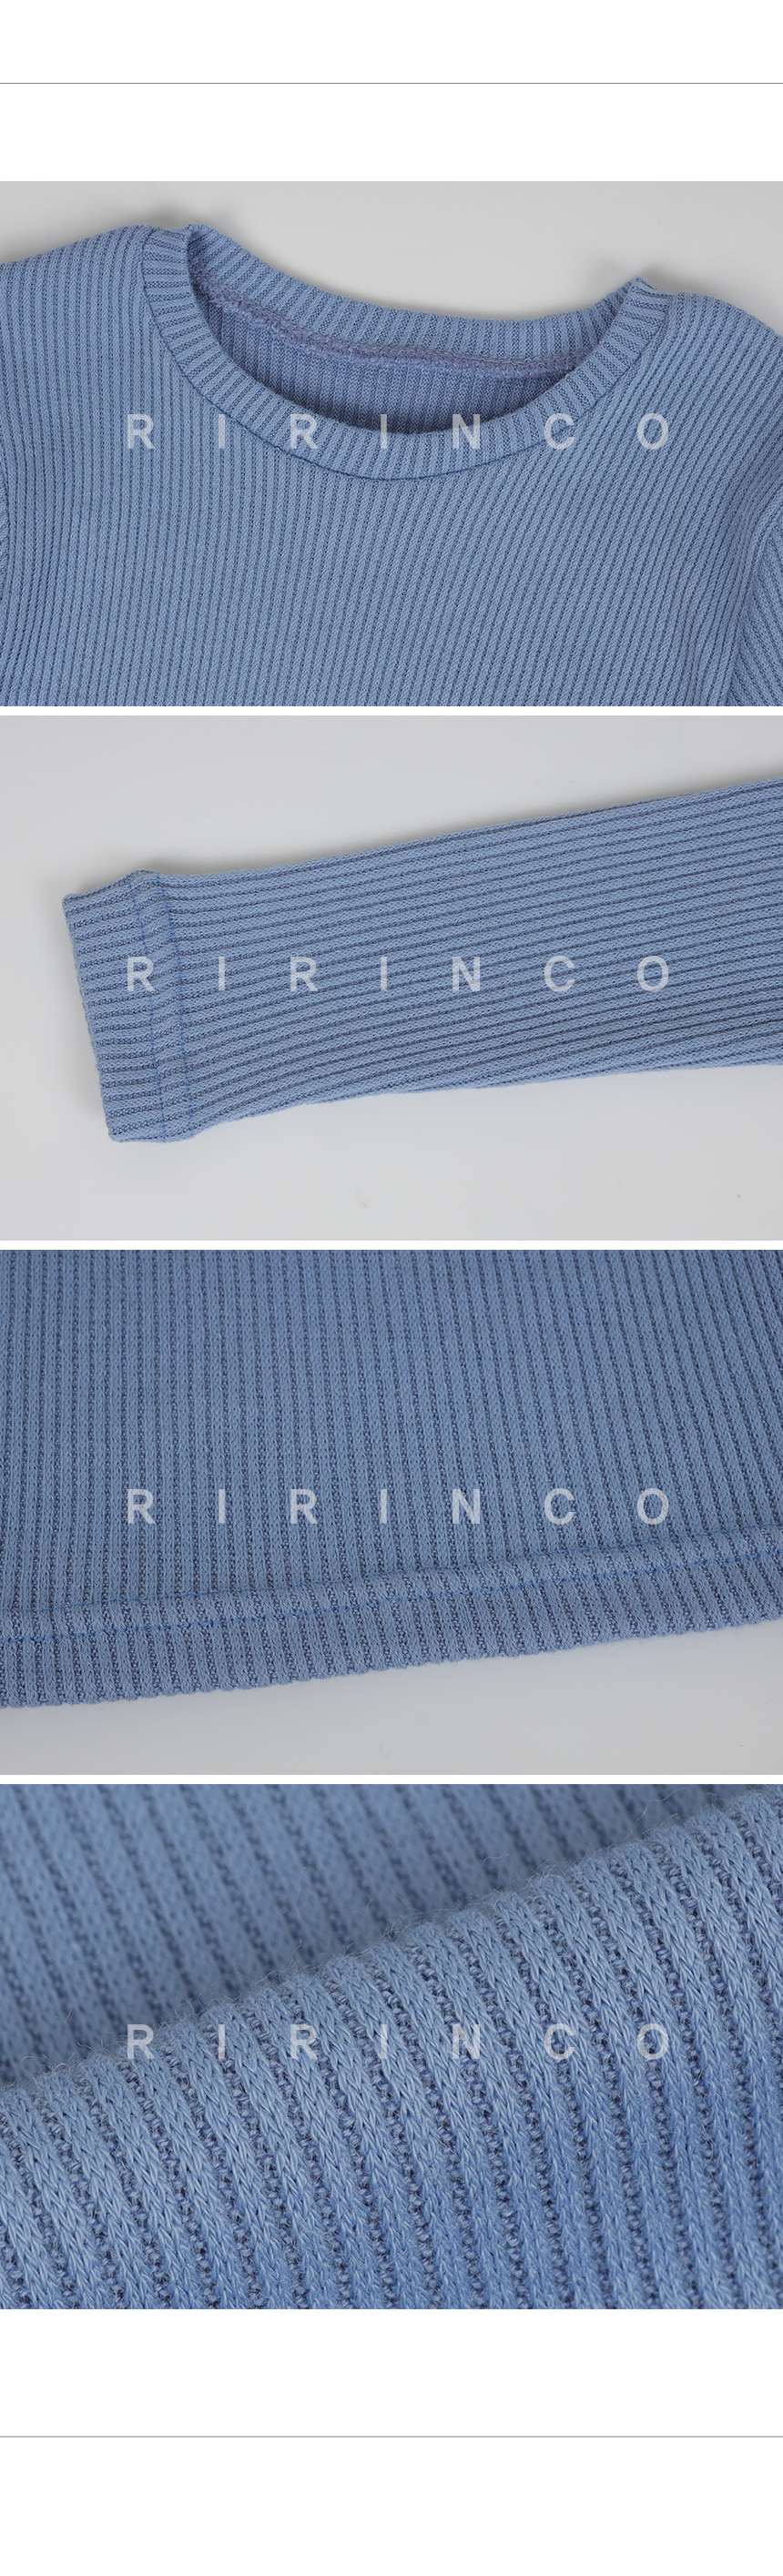 RIRINCO リブスリムフィットニットTシャツ